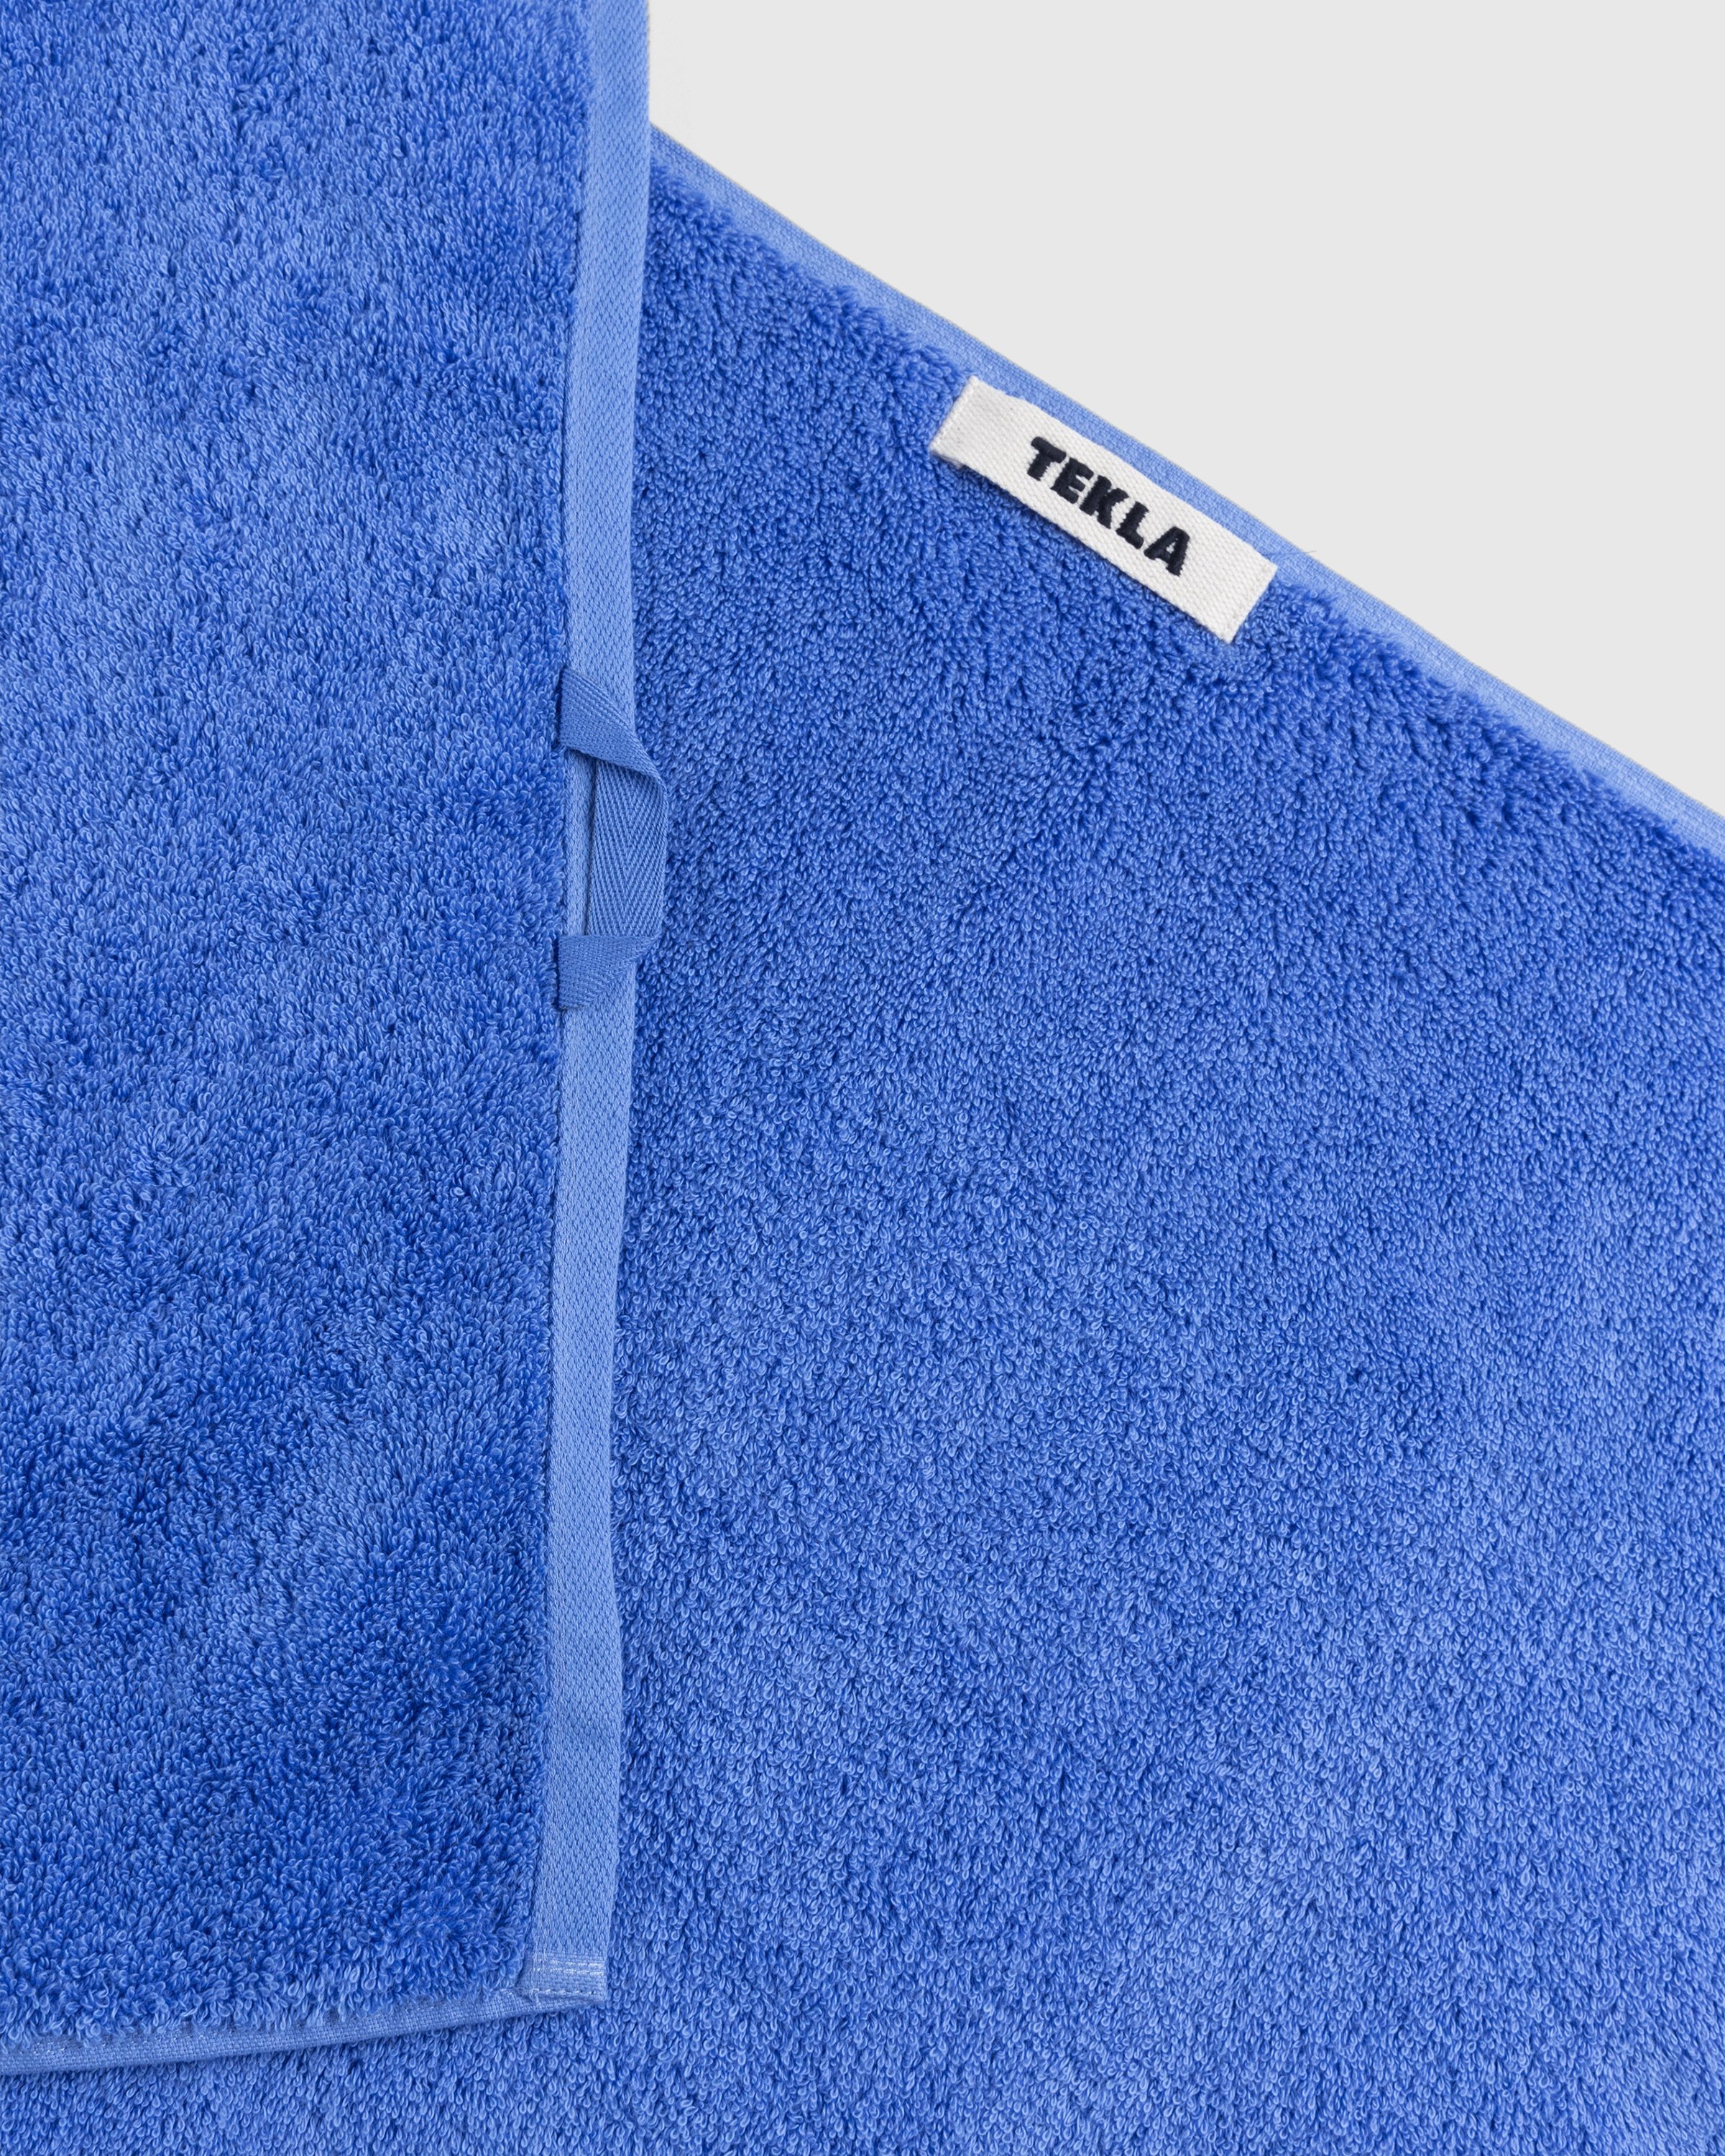 Tekla - Guest Towel Clear Blue - Lifestyle - Blue - Image 3